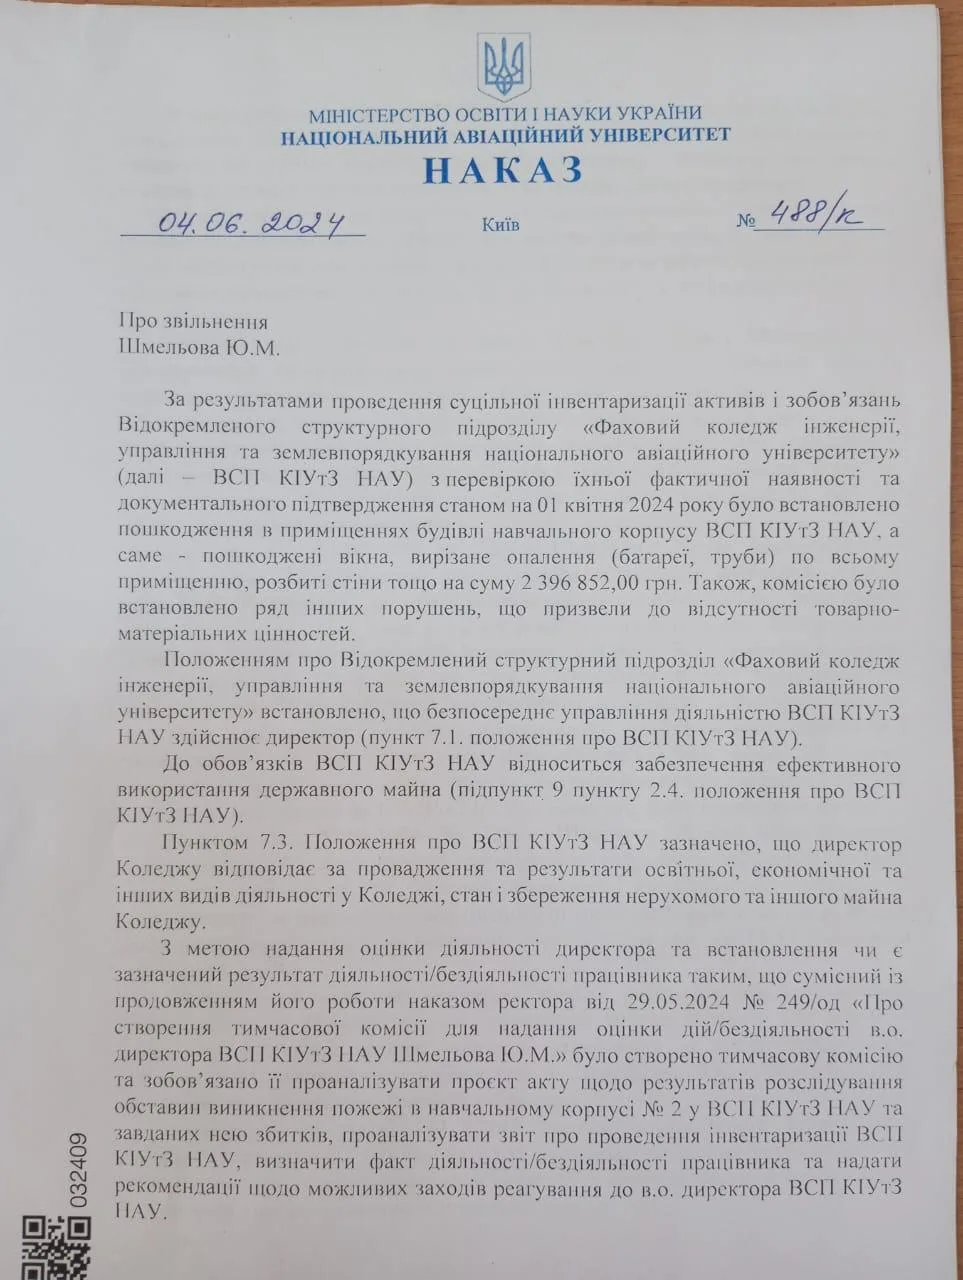 Шмельова Ю.М., виконуючого обов’язки директора ВСП «КІУтЗ НАУ», було звільнено